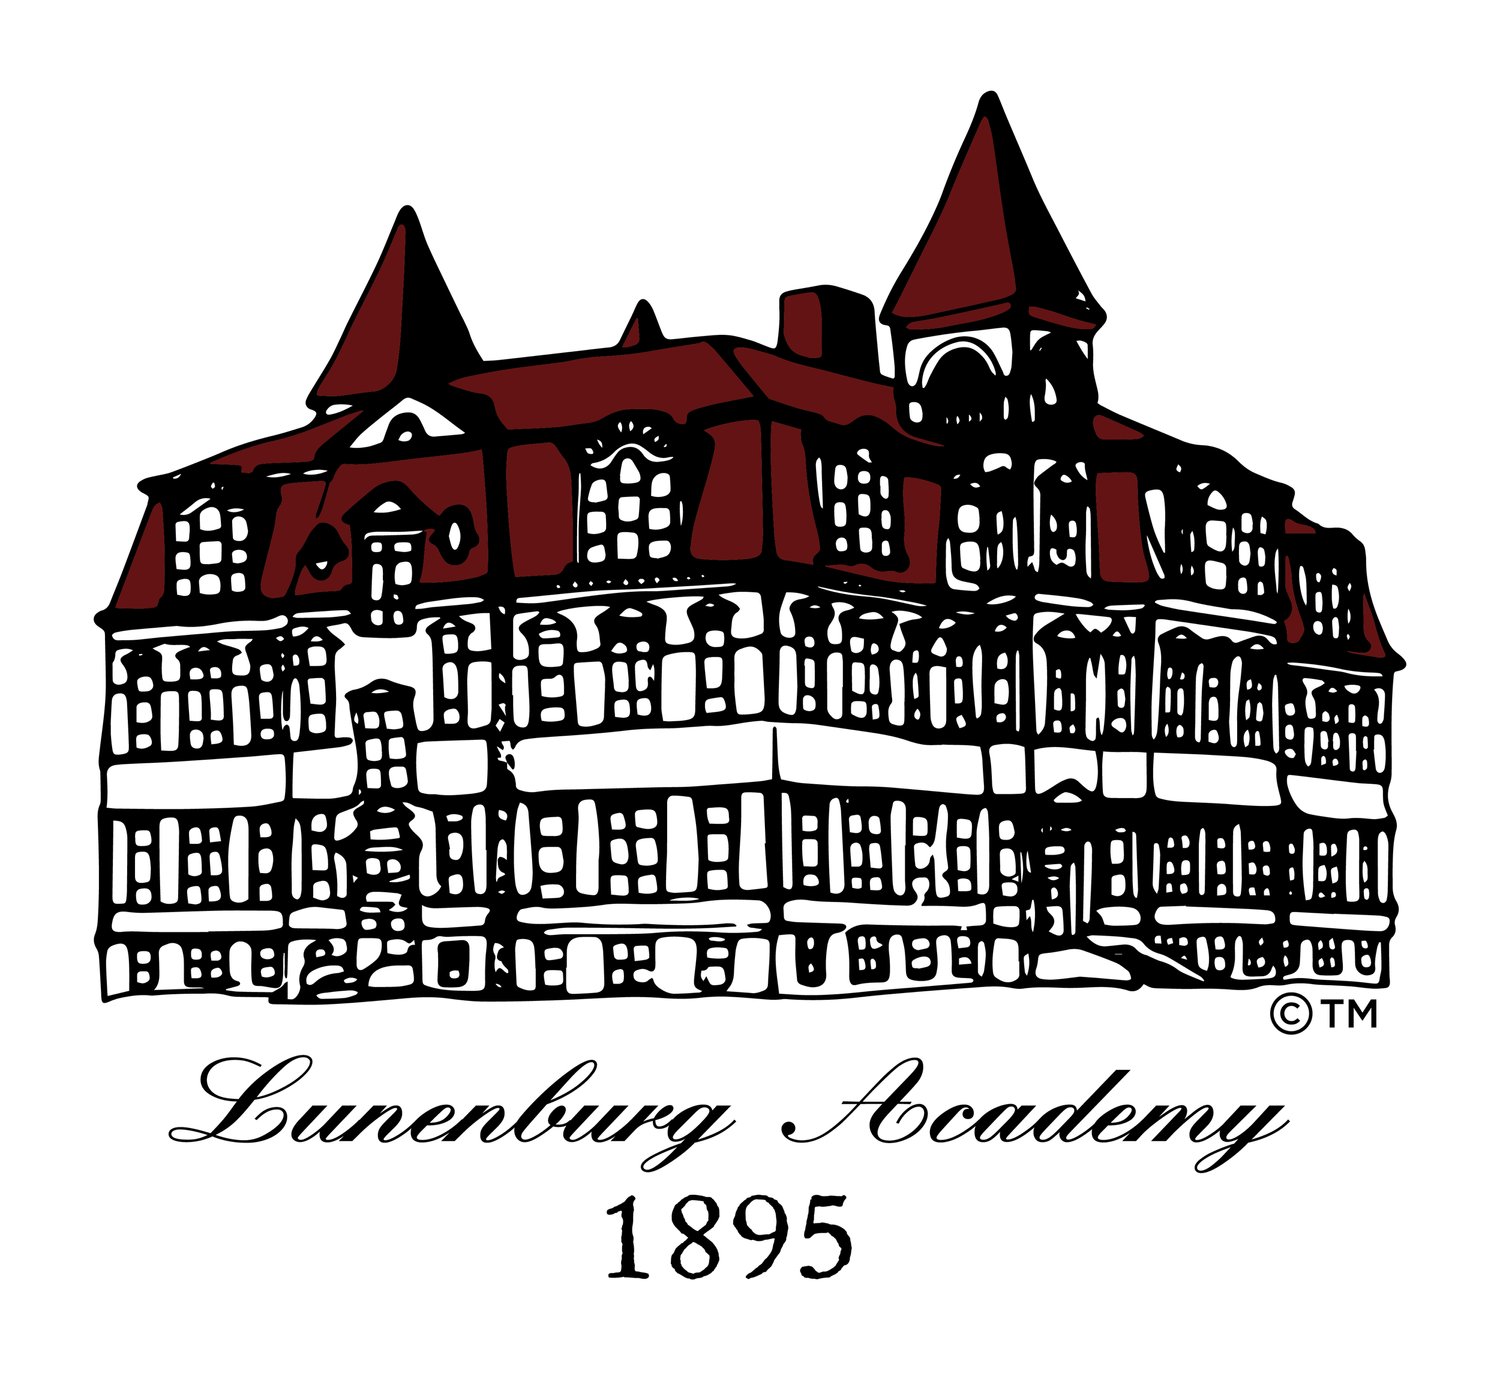 Bienvenue dans la Classe d’histoire de l’Académie de Lunenburg